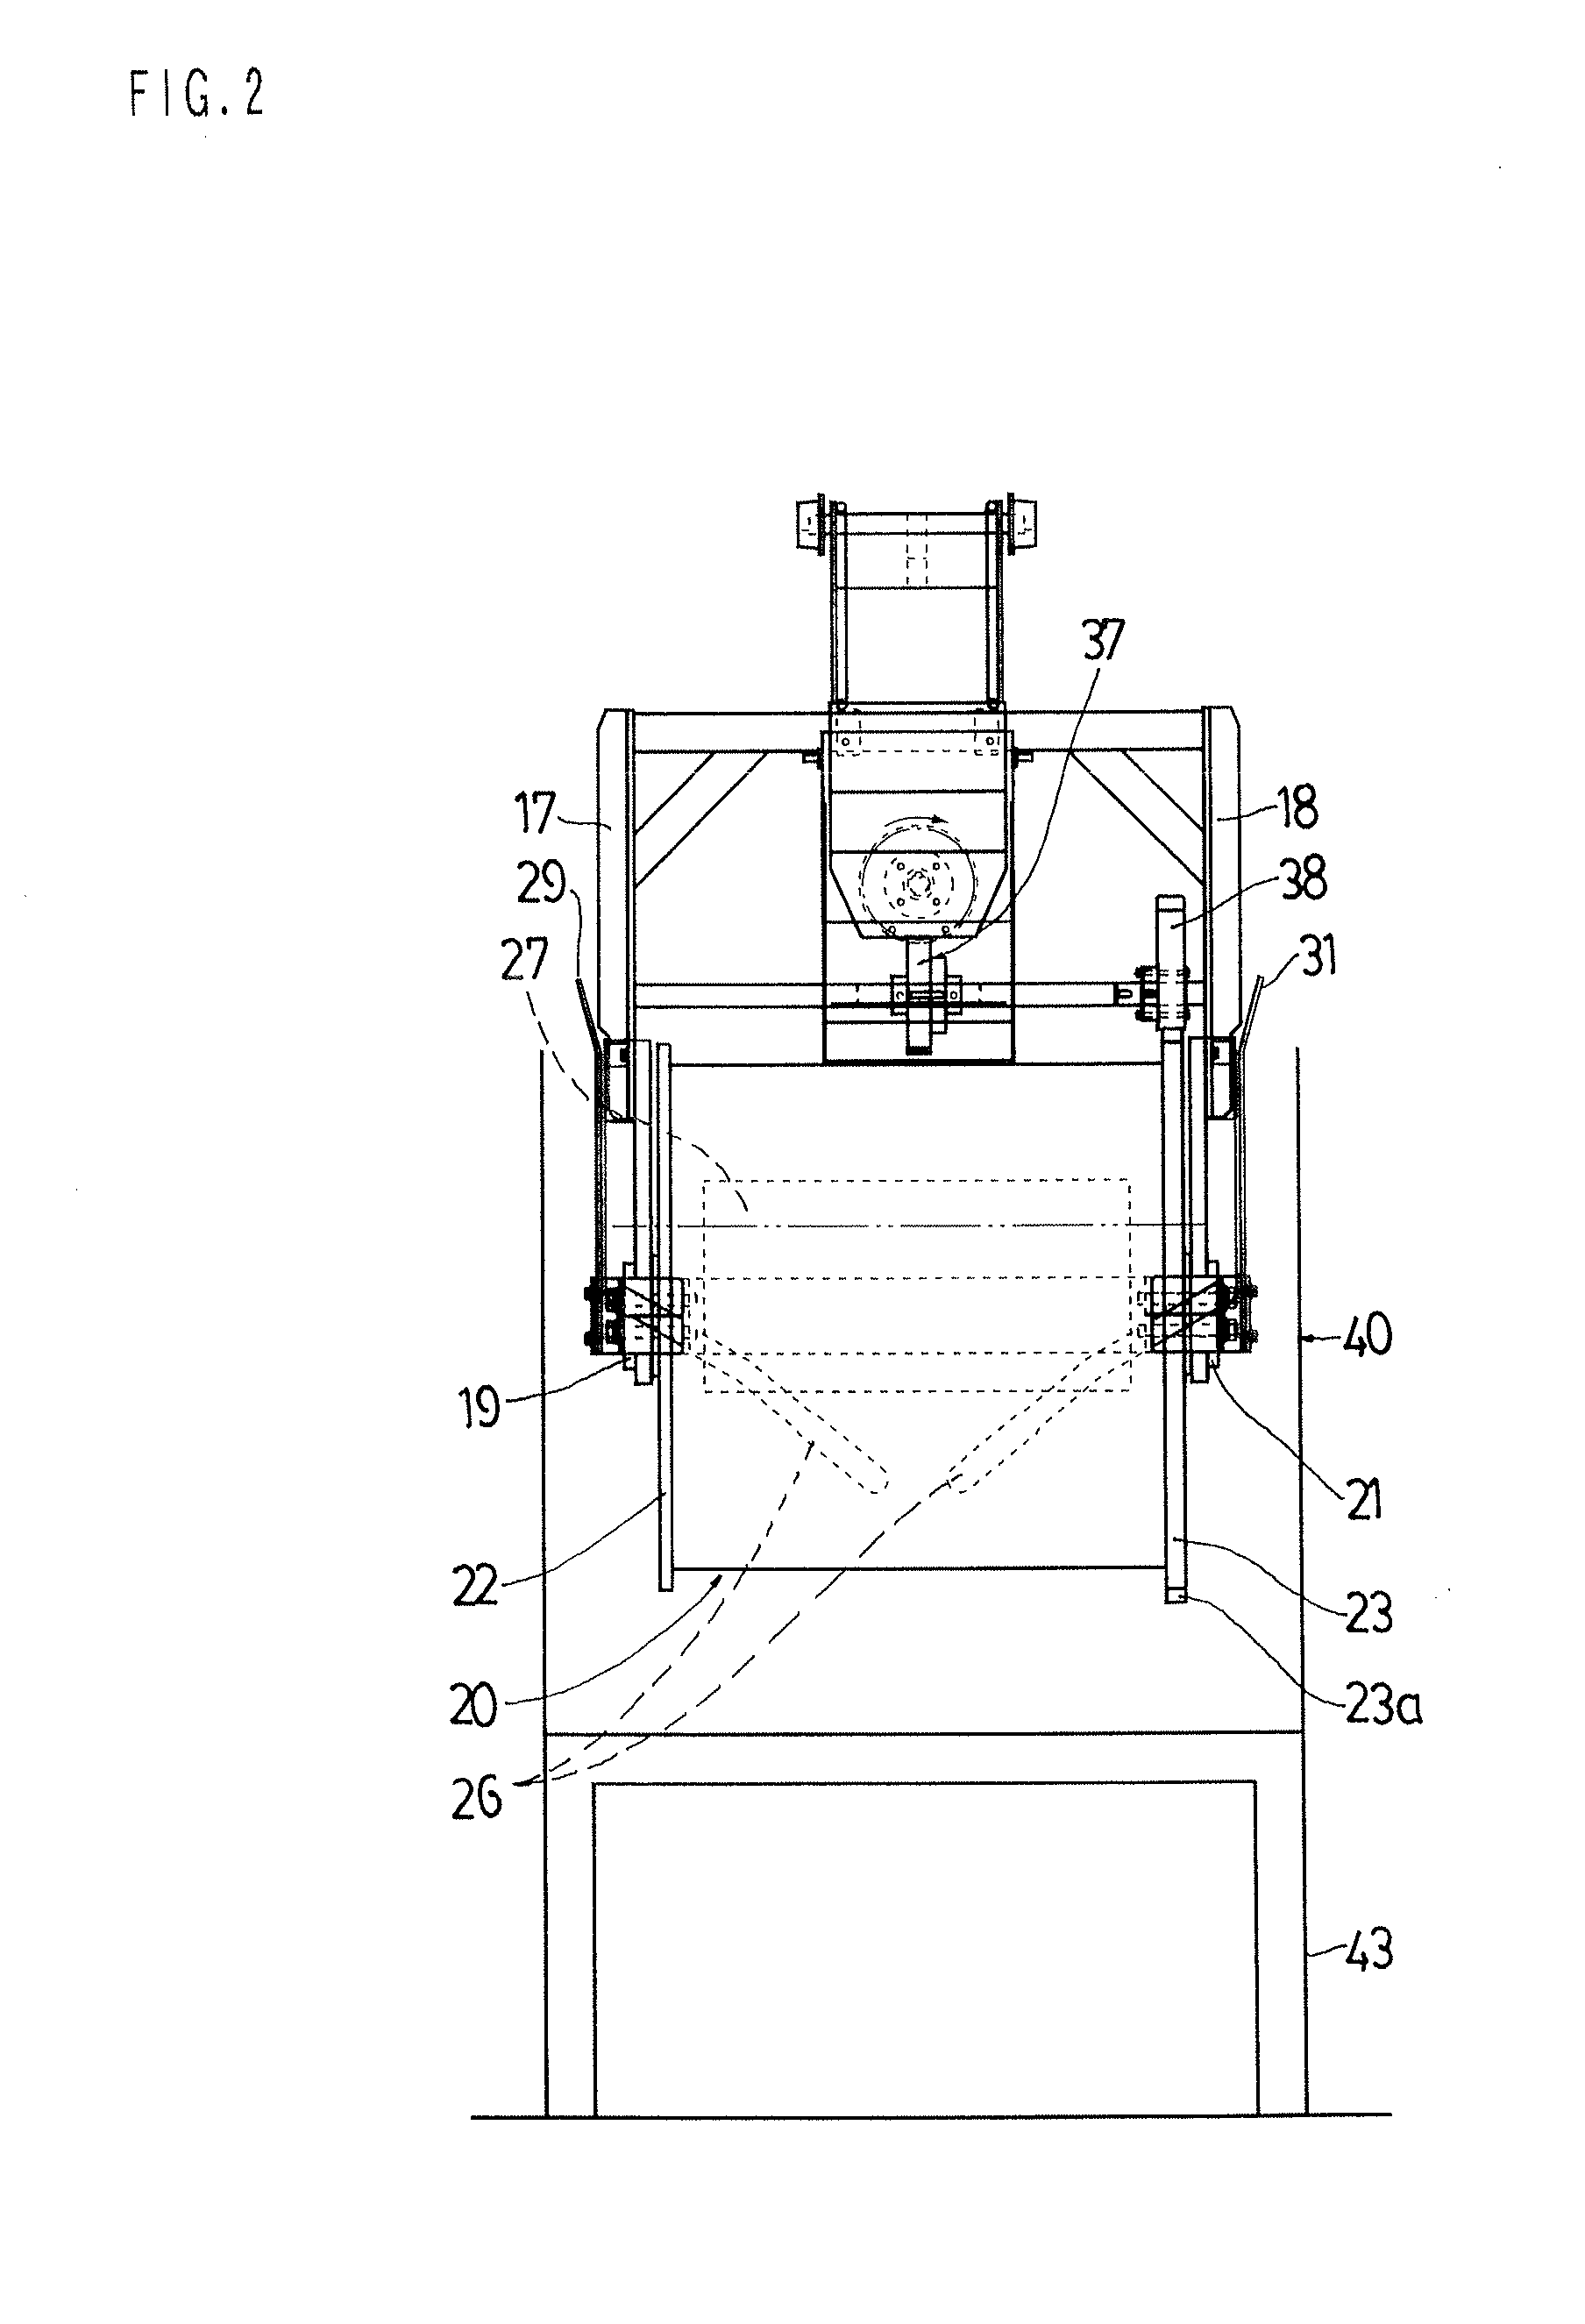 Barrel apparatus for barrel plating